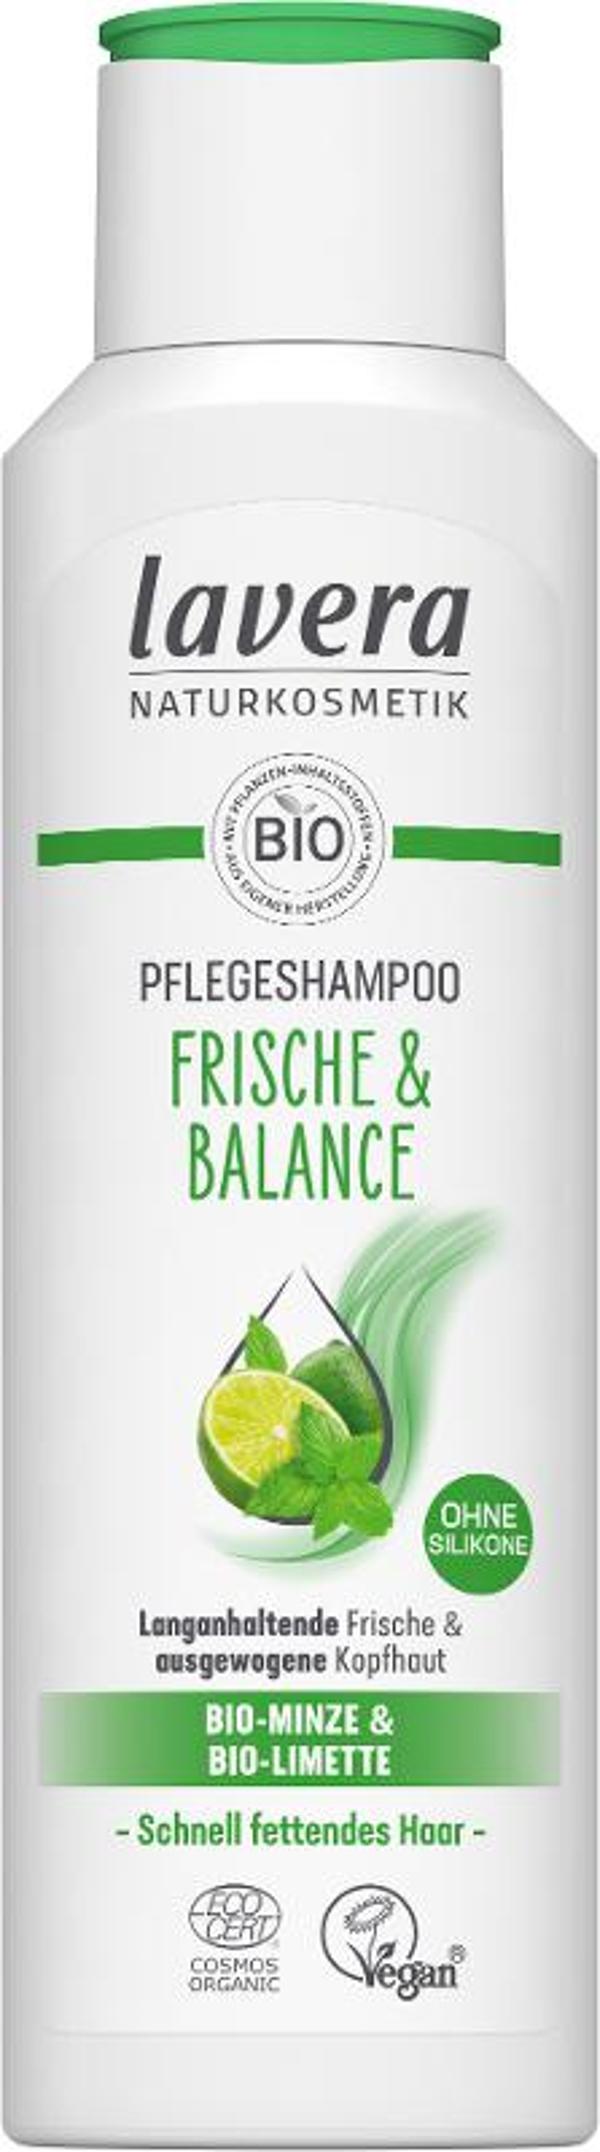 Produktfoto zu Shampoo Frische und Balance